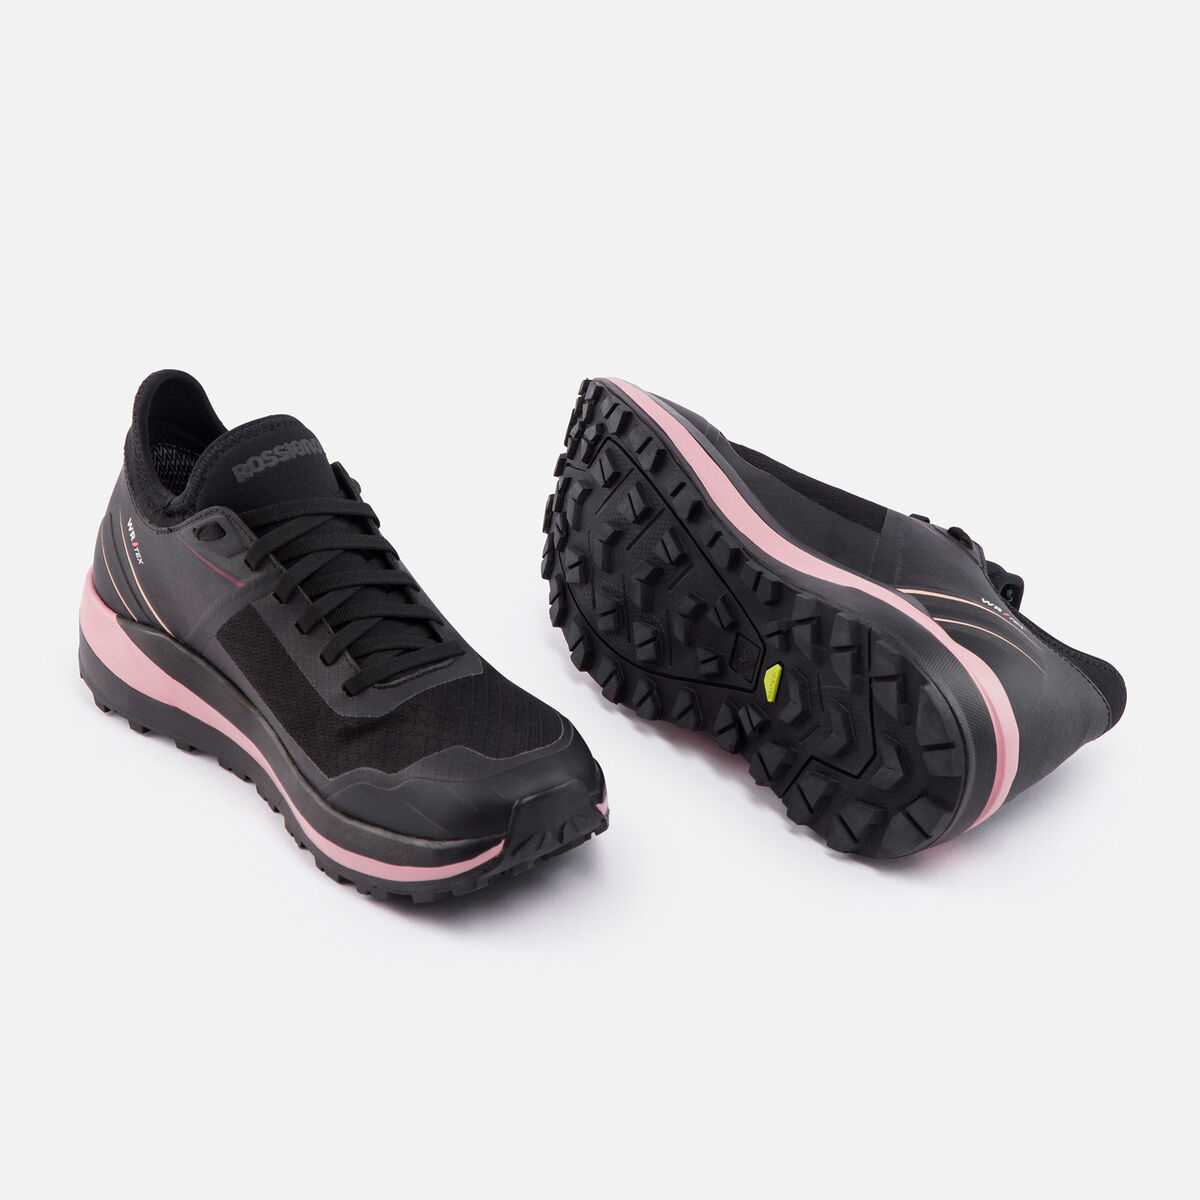 Rossignol Women's Waterproof Active Outdoor Shoes Black